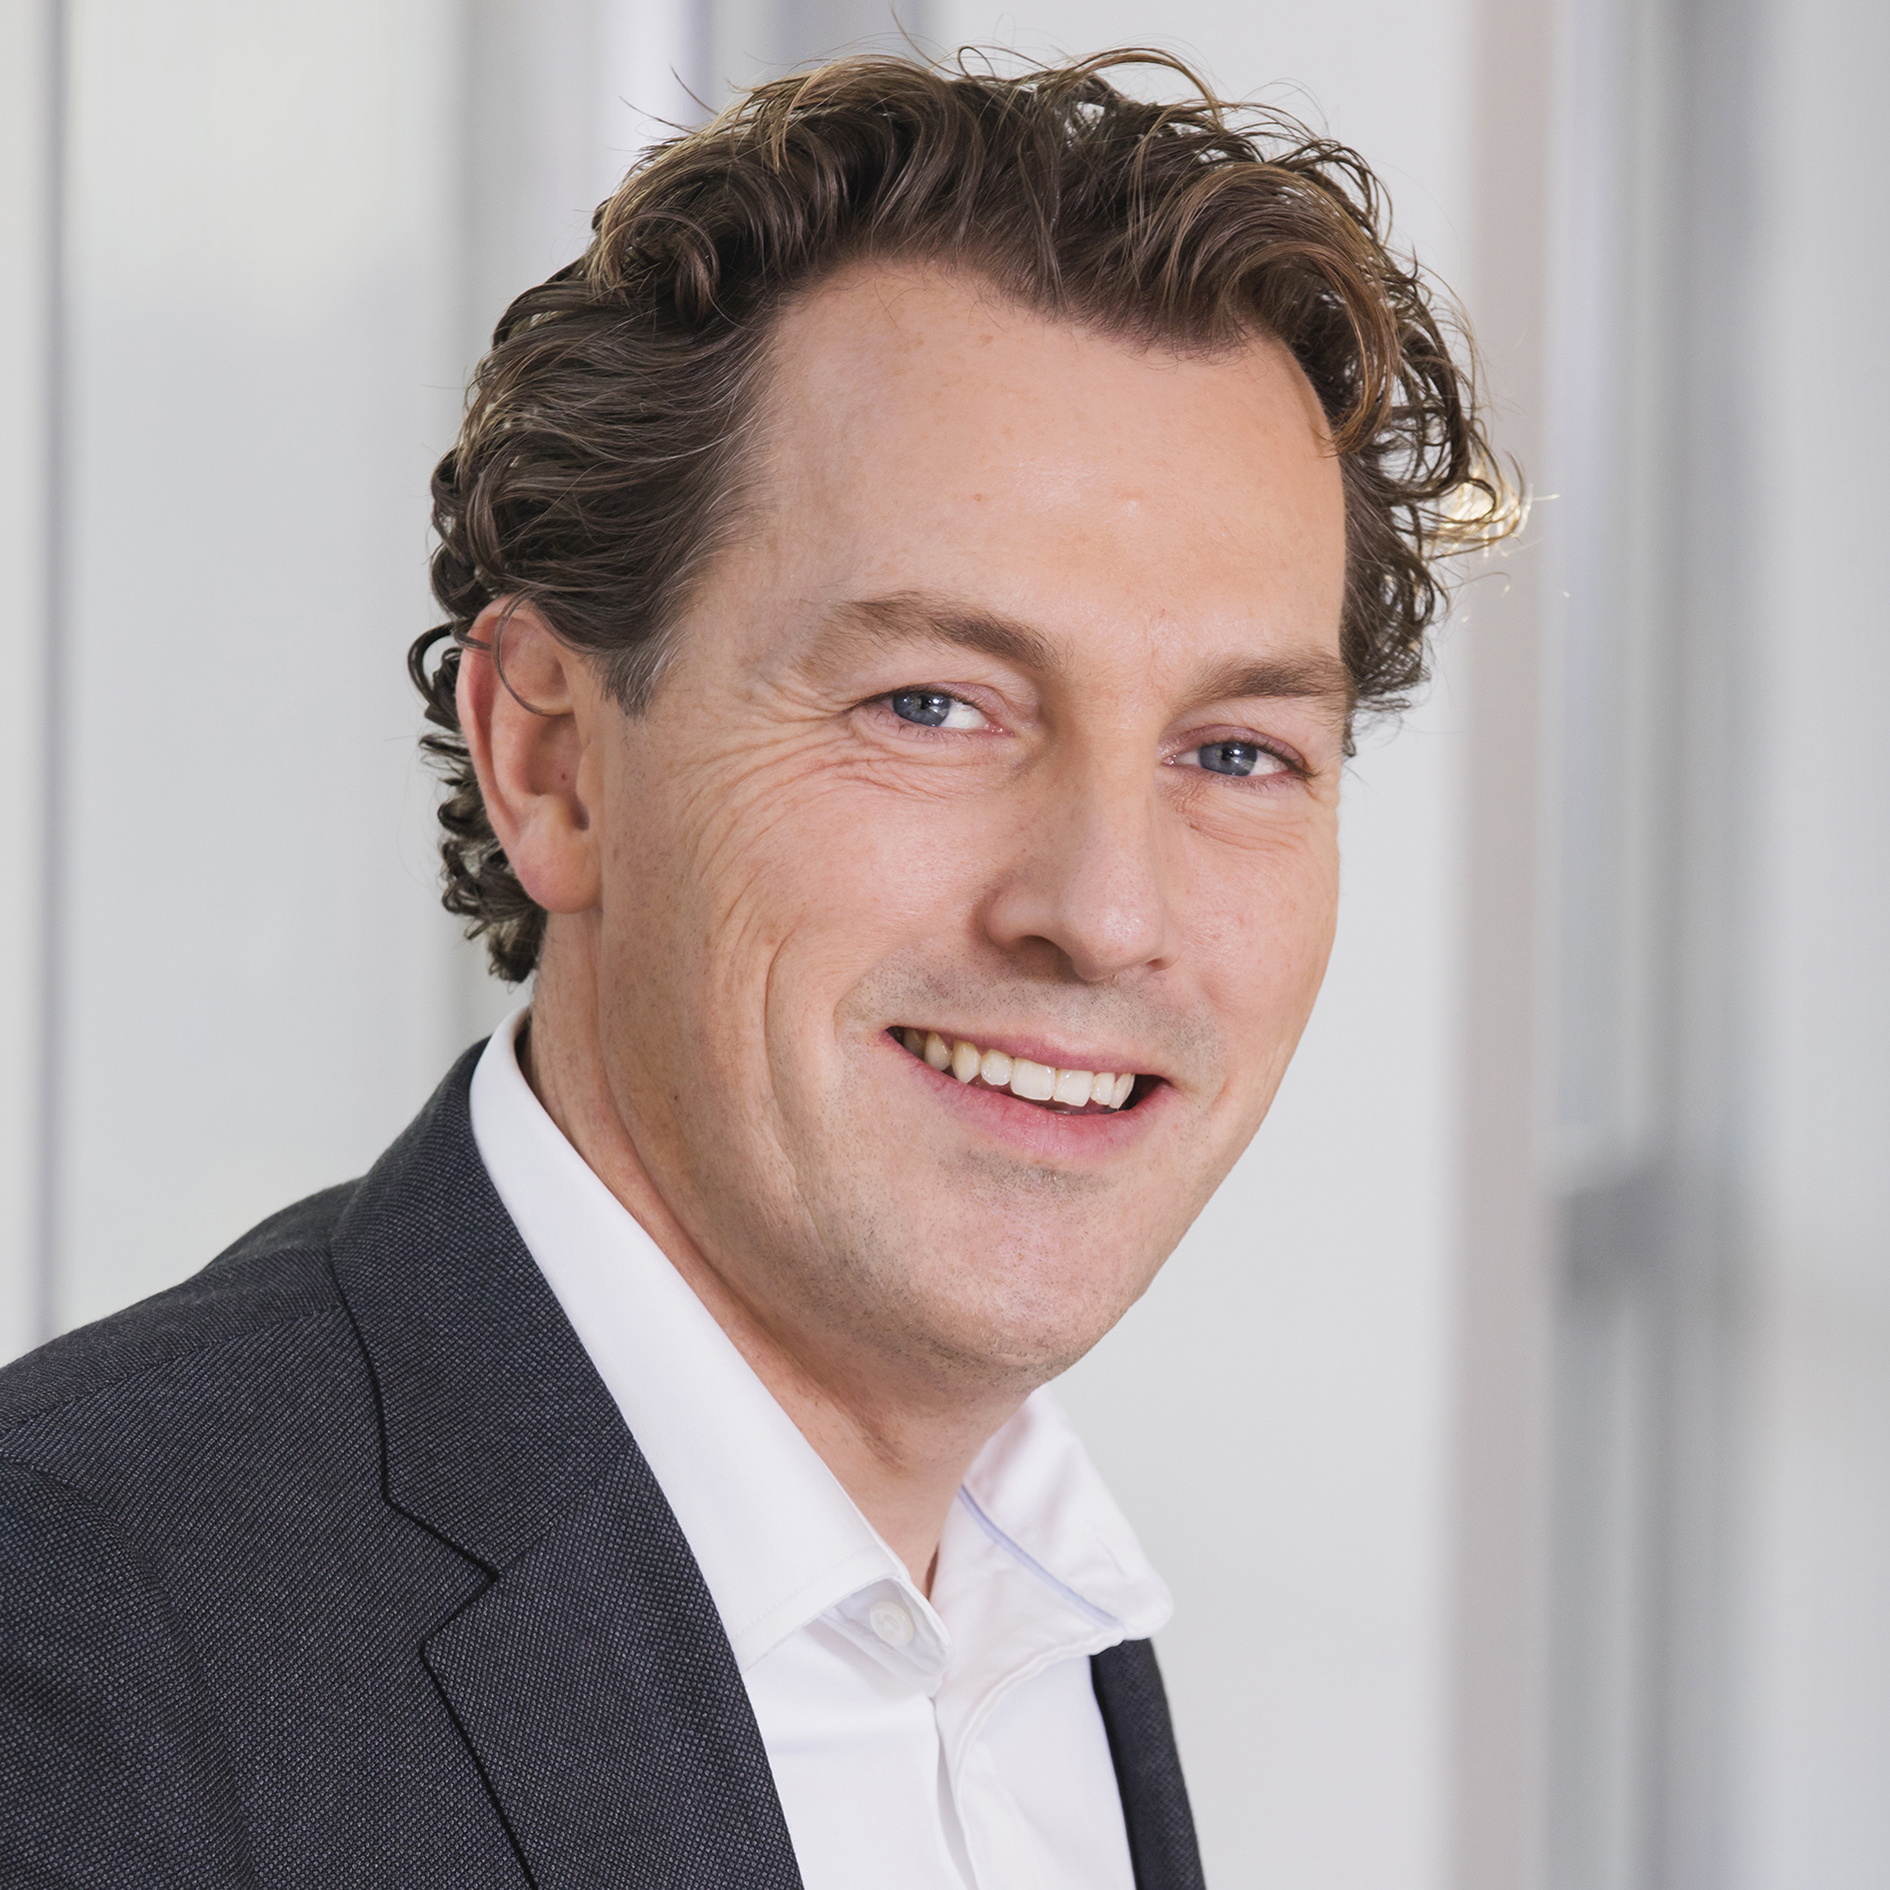 Erwin Dito, nieuwe Directeur Marketing, Communicatie en Consumer Insights bij McDonald’s Nederland. Bron: FranchiseFormules.NL